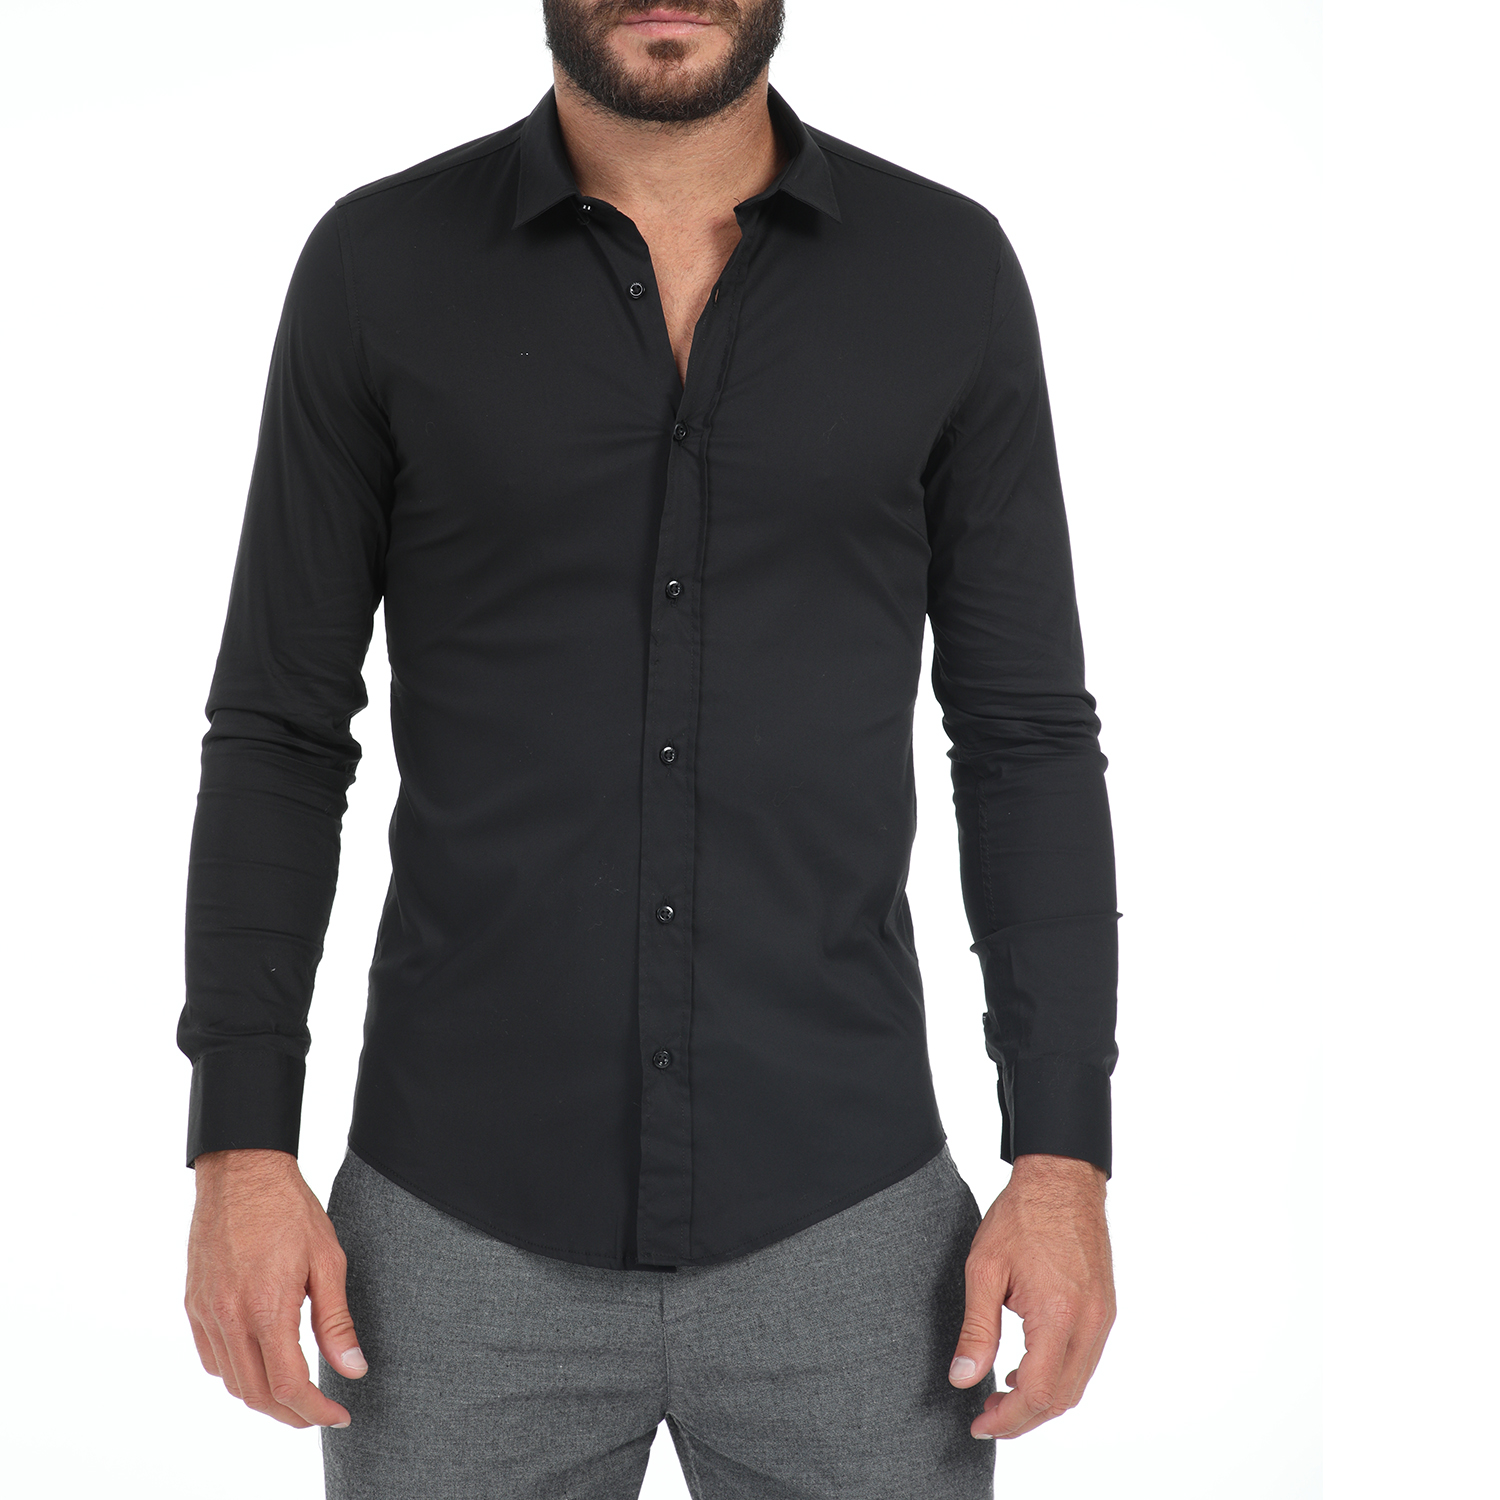 Ανδρικά/Ρούχα/Πουκάμισα/Μακρυμάνικα IMPERIAL - Ανδρικό πουκάμισο IMPERIAL μαύρο